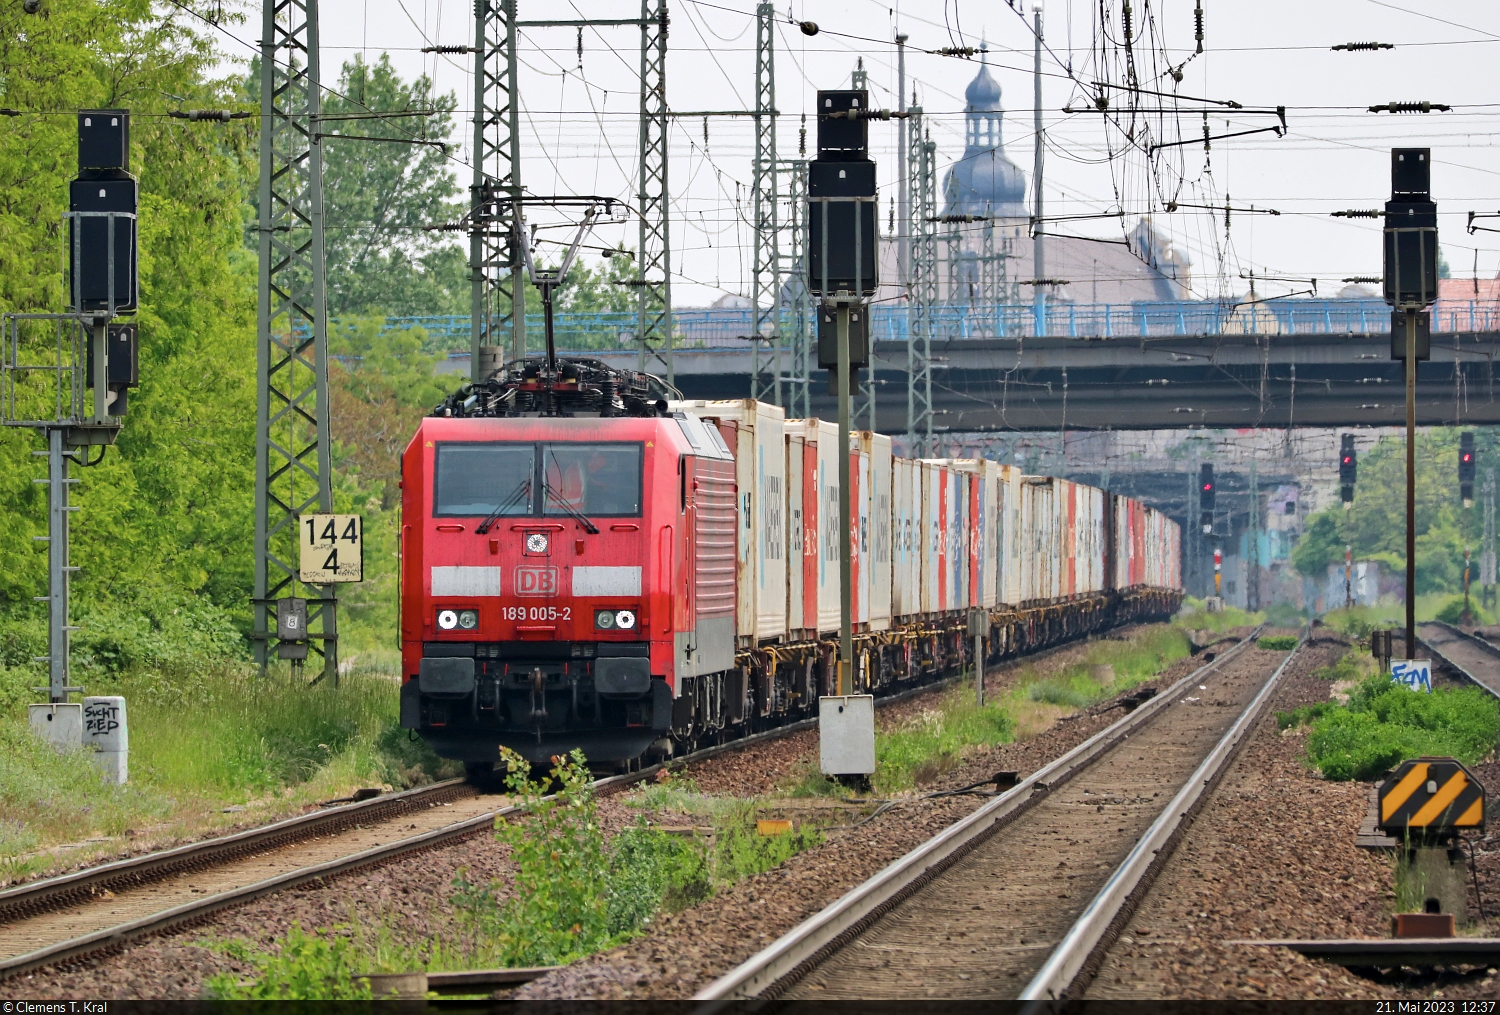 Containerzug mit 189 005-2 (Siemens ES64F4) muss auf der Fahrt Richtung Braunschweig im Bahnhof Magdeburg-Sudenburg erst einmal auf die Seite. Womöglich legte sie hier einen Pausenhalt ein.
Tele-Aufnahme vom Bahnsteigende.

🧰 DB Cargo
🕓 21.5.2023 | 12:37 Uhr